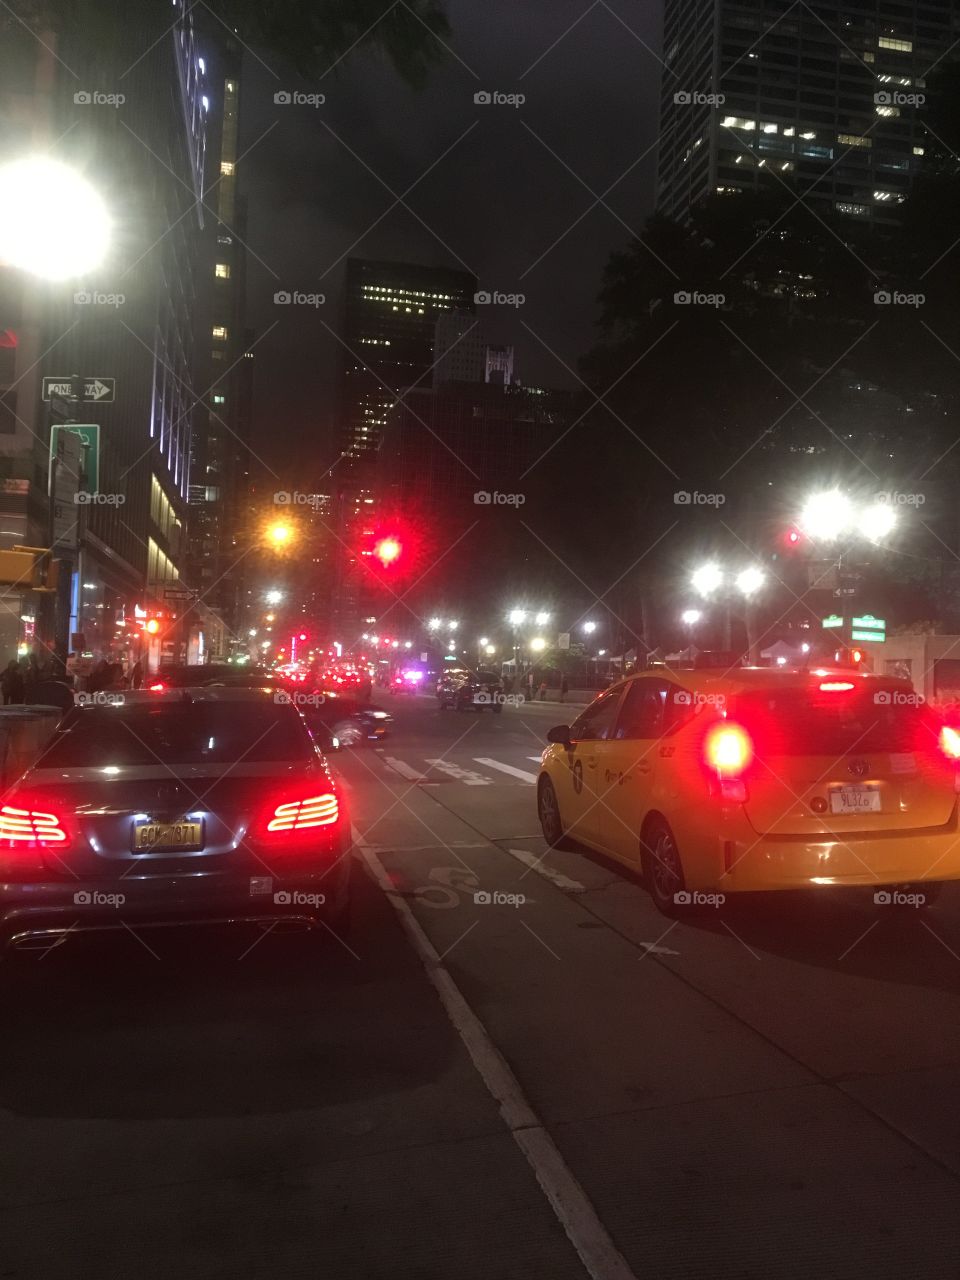 NYC at night